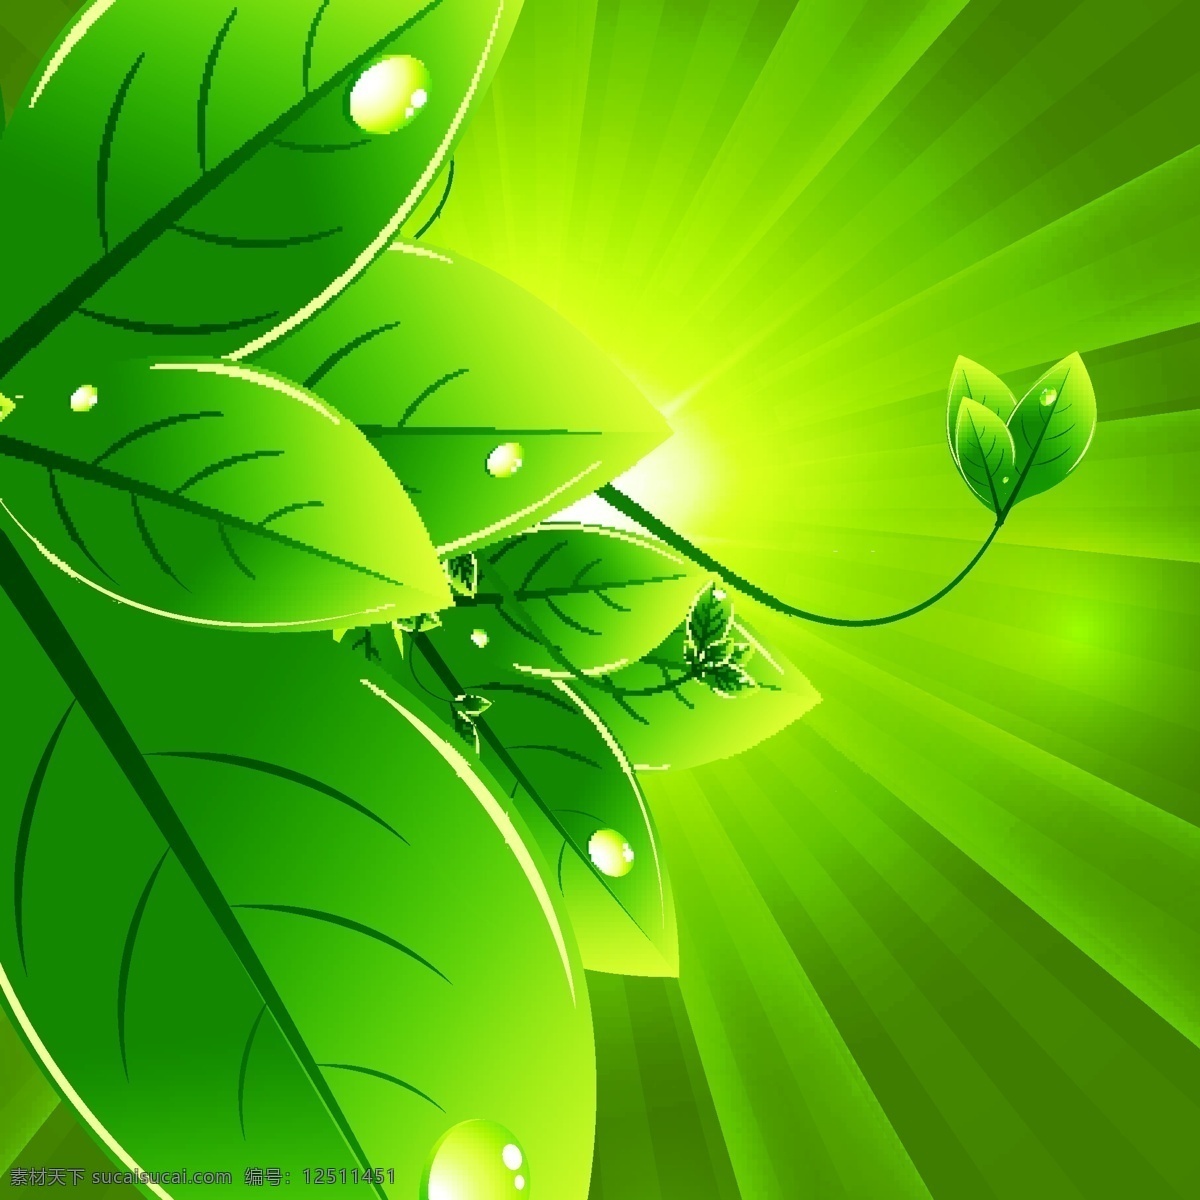 精美 绿色环保 主题 标签 矢量 绿色背景 绿叶 叶子 绿色植物图标 环保标志图标 生态环保 环境保护 生态环境 环保logo 按钮图标 标志图标 矢量素材